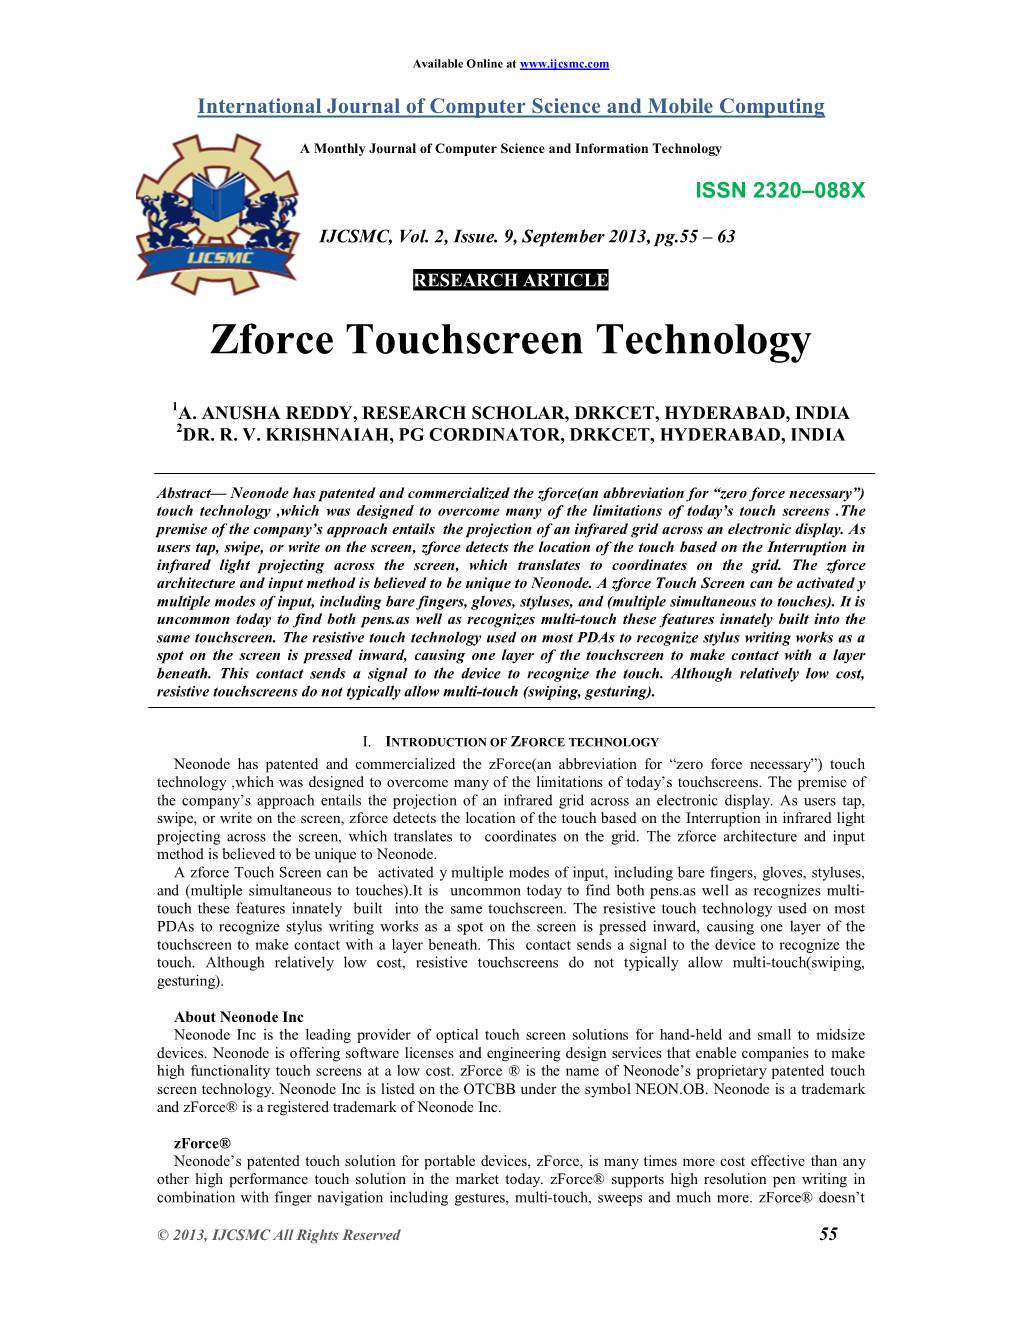 Zforce Touchscreen Technology